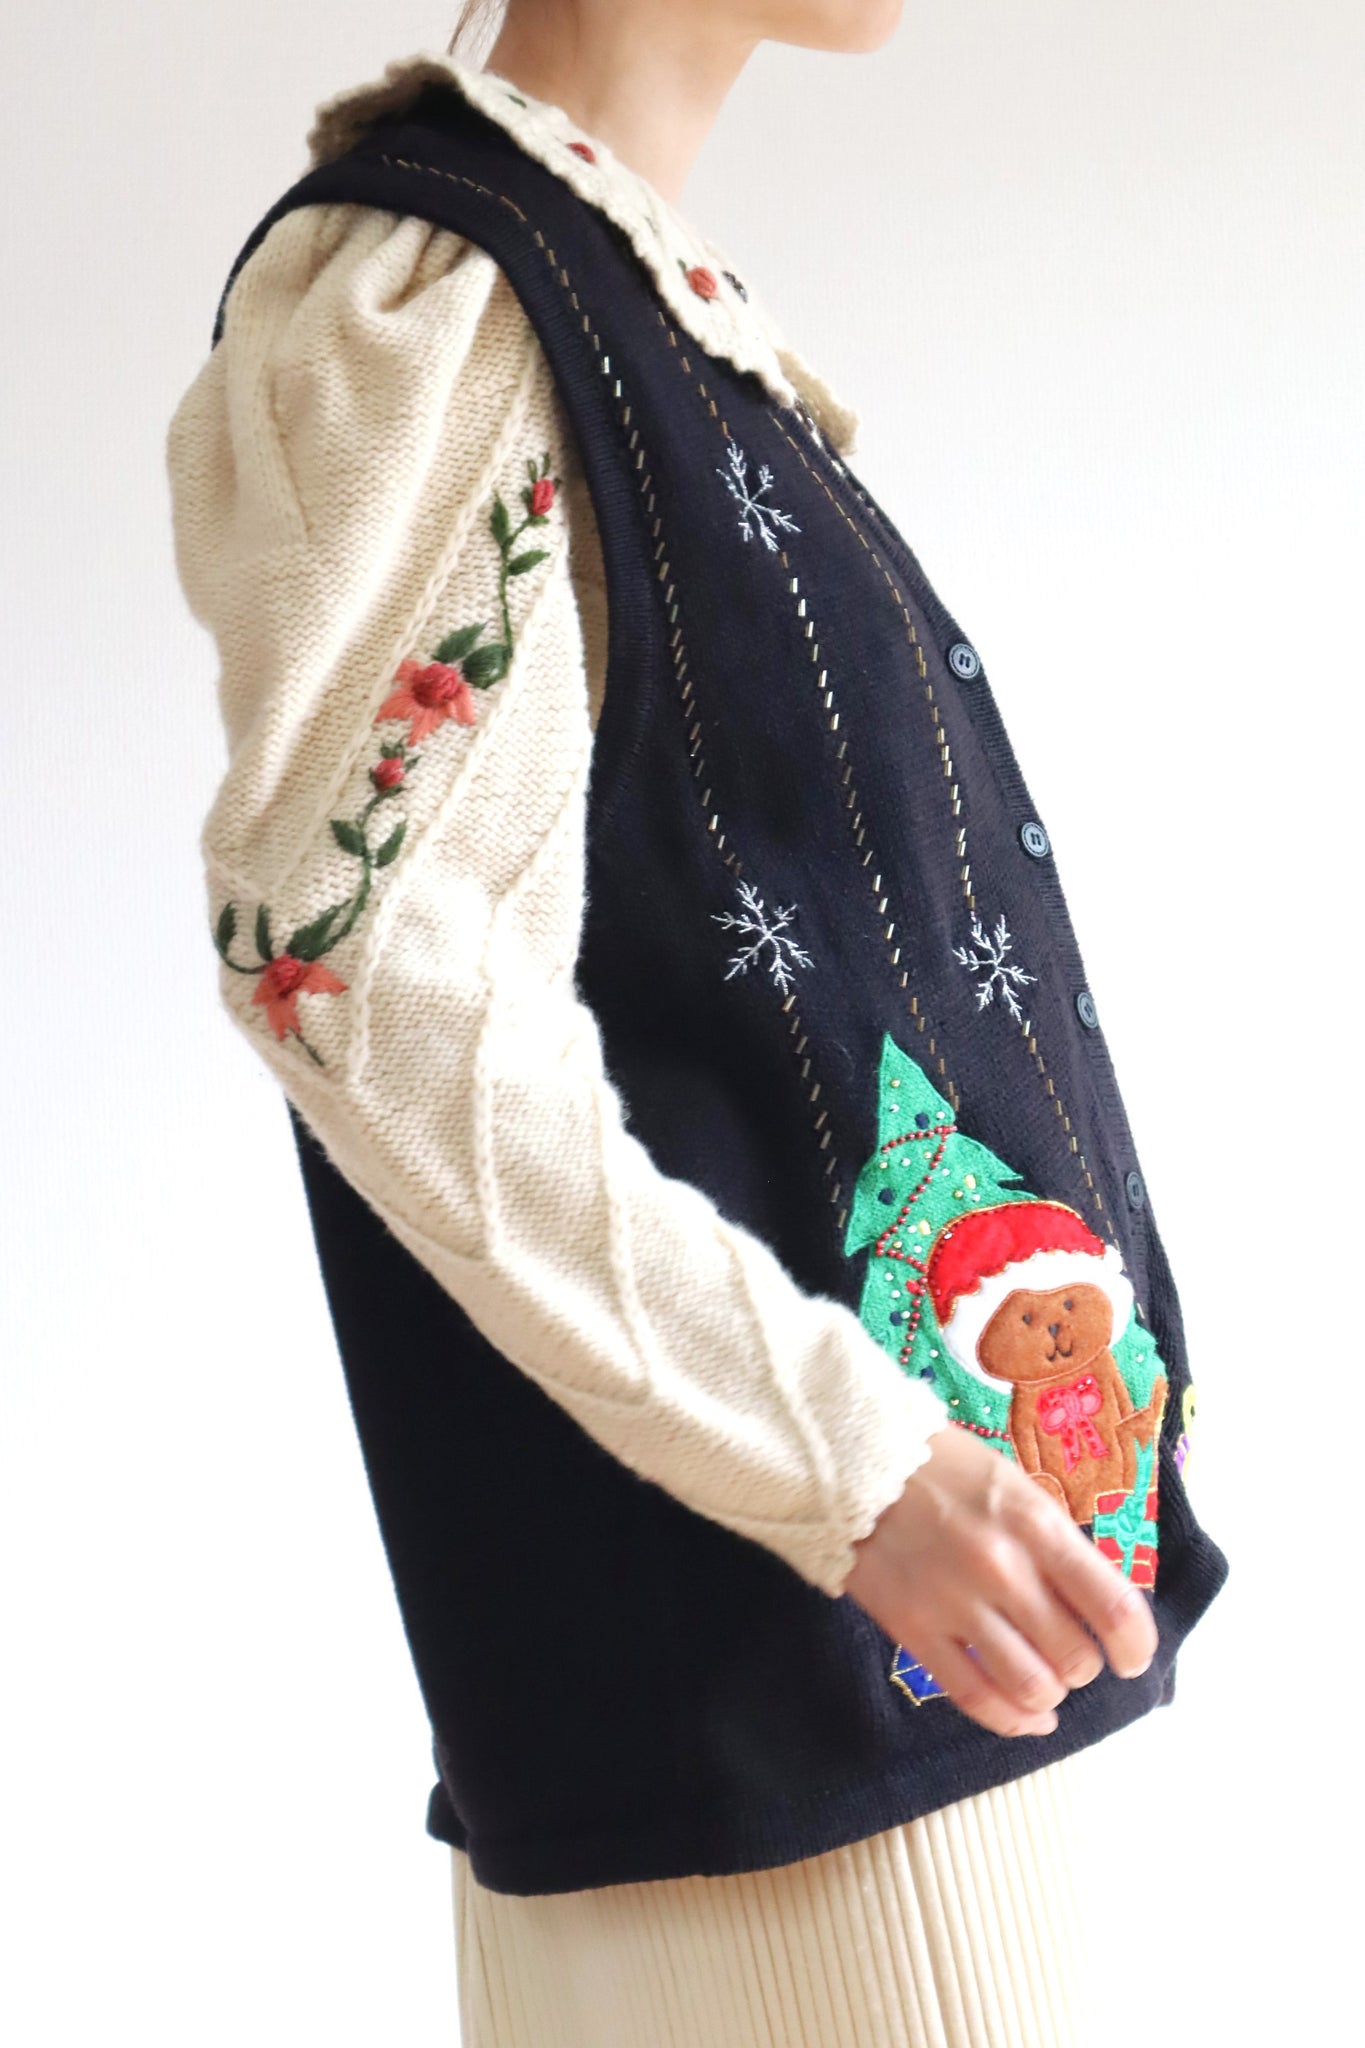 80s Christmas Knit Vest